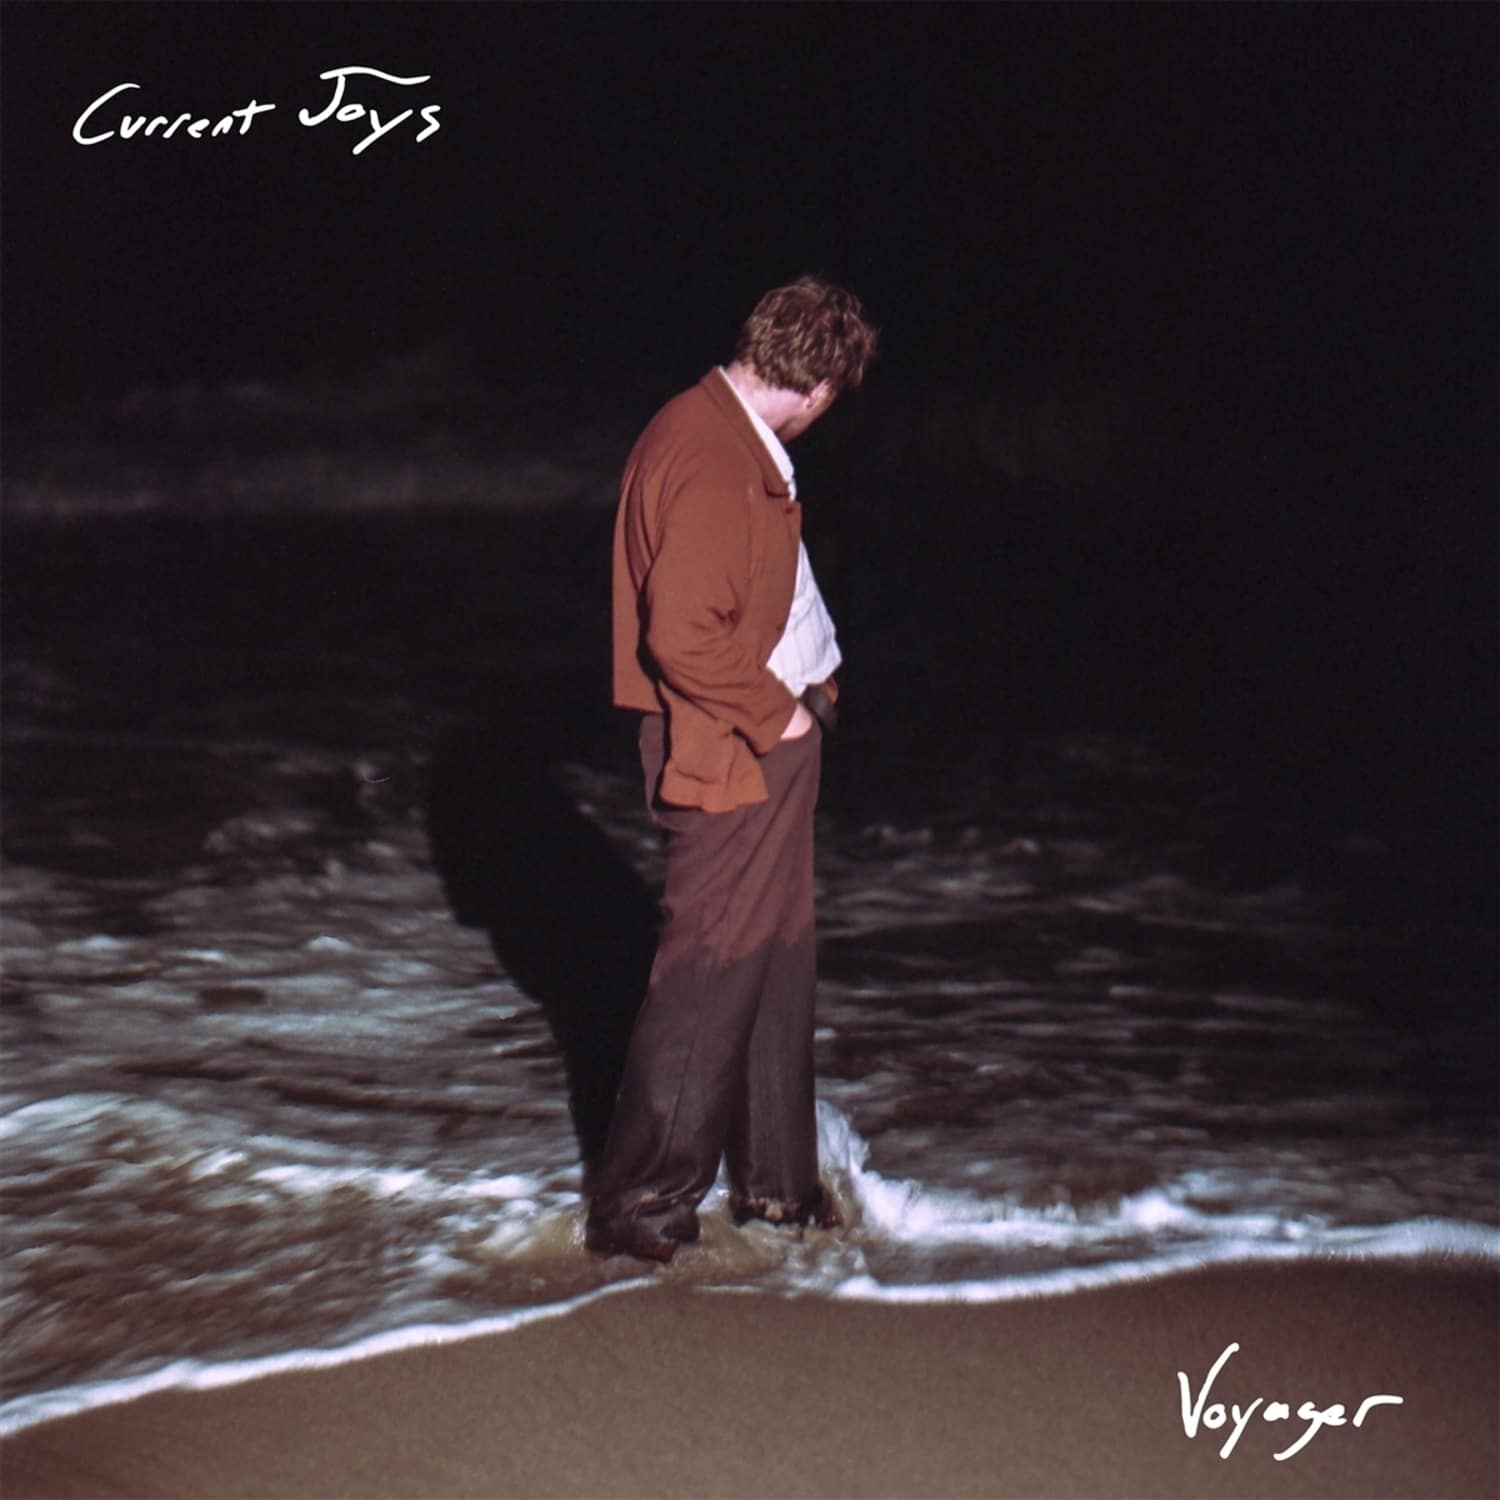 Current joys. Current Joys Voyager. Current Joys - Voyager (2021). "Current Joys" "Voyager"album. Fear current Joys.